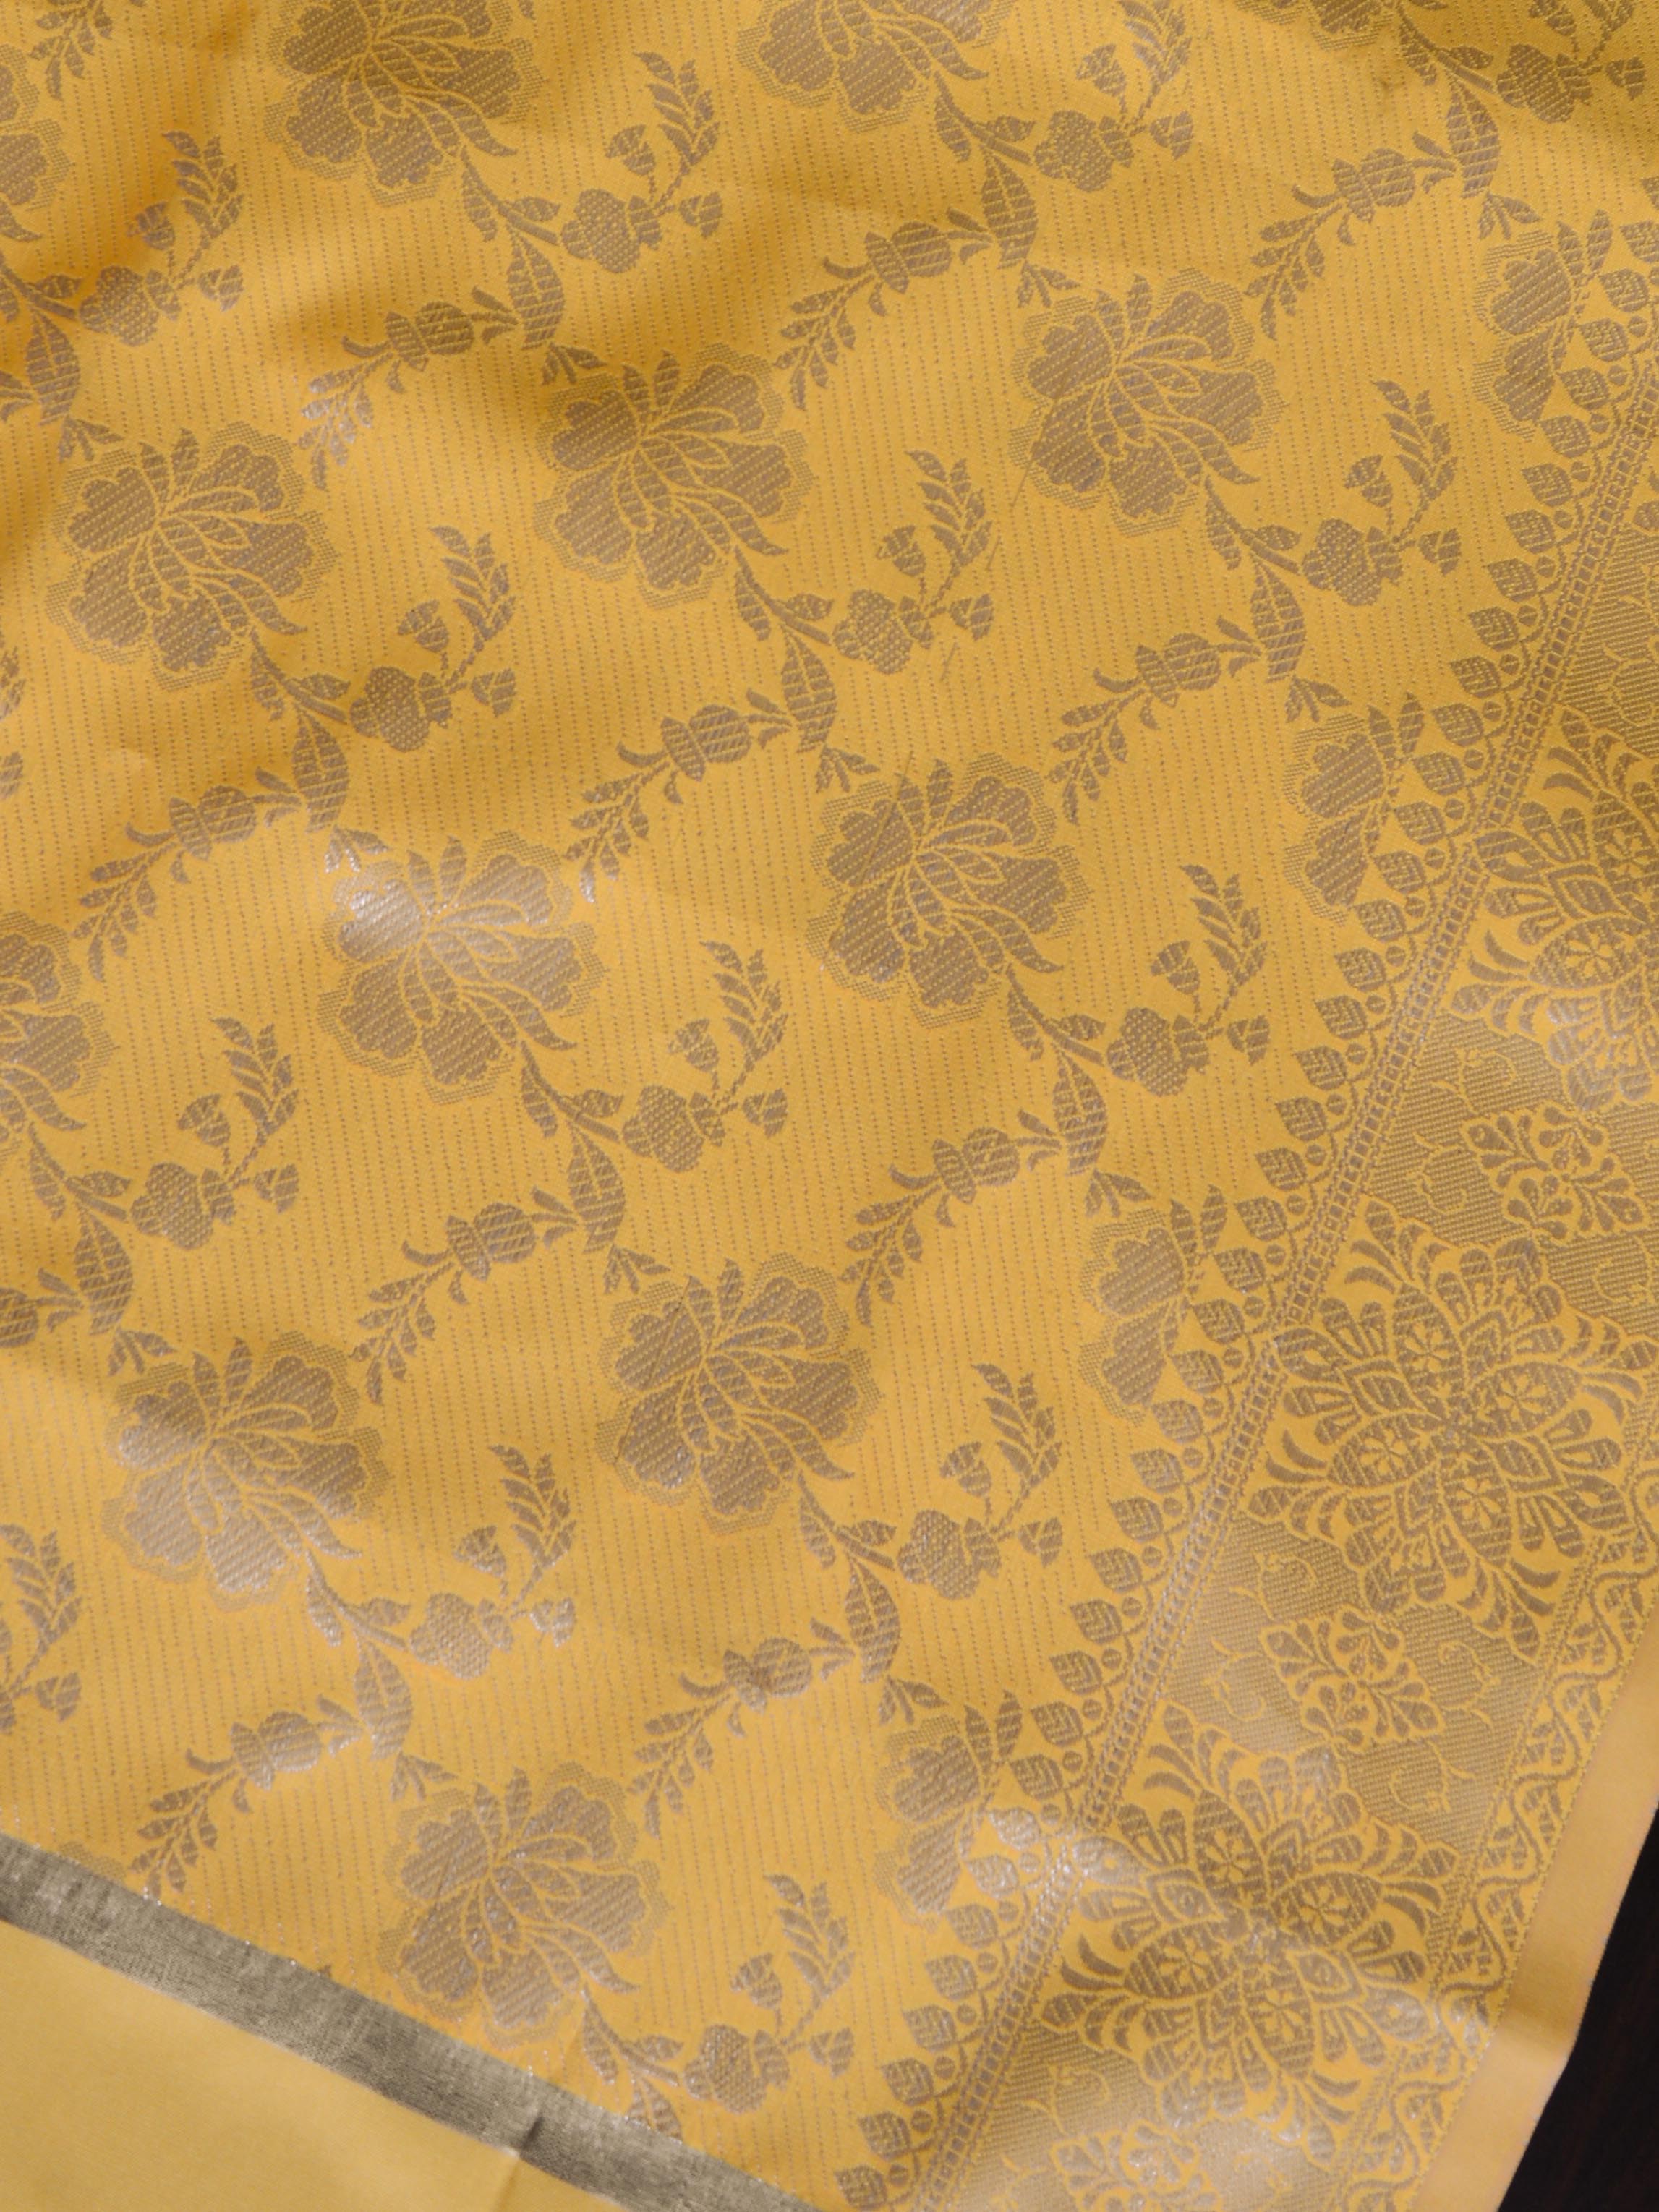 Banarasee Art Silk Dupatta Silver Zari Jaal Design-Yellow